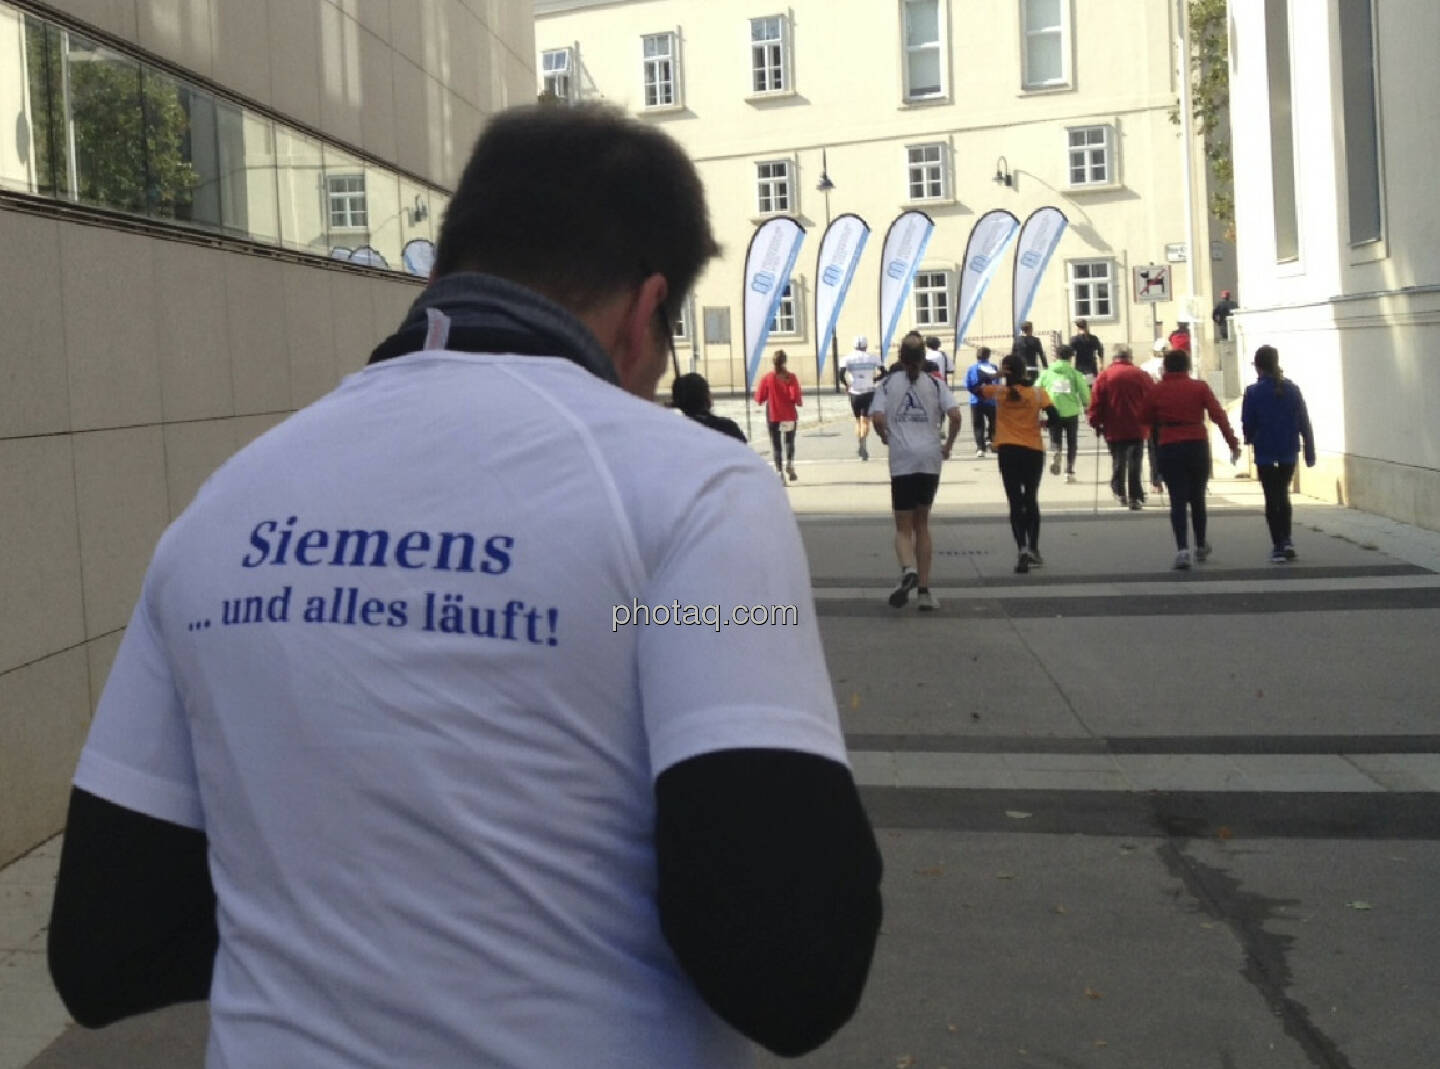 Siemens ... und alles läuft!